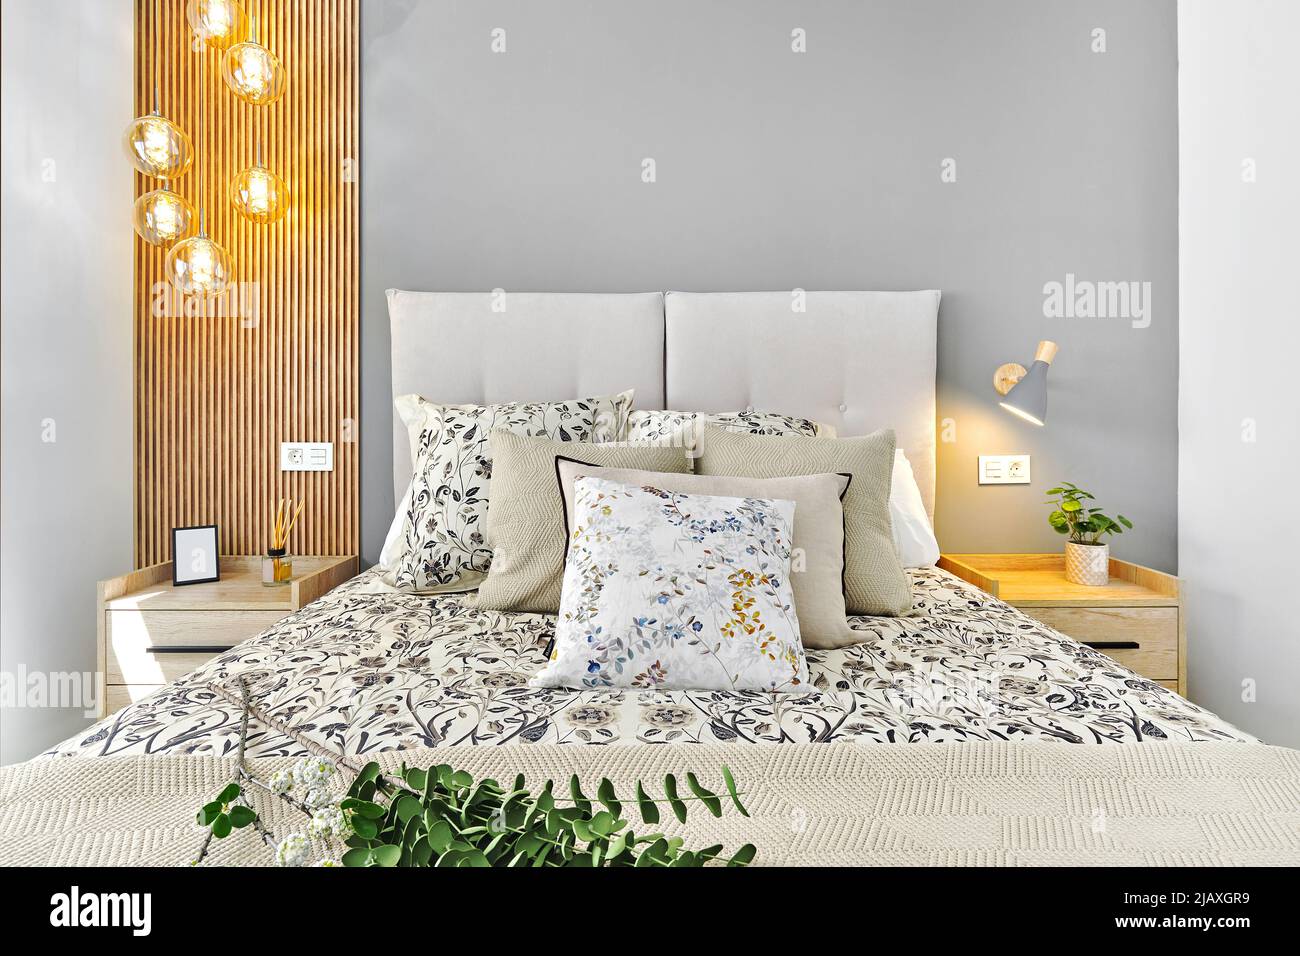 Accogliente camera da letto aggiornata con illuminazione, senza persone. Arredamento moderno per concetto di comfort Foto Stock